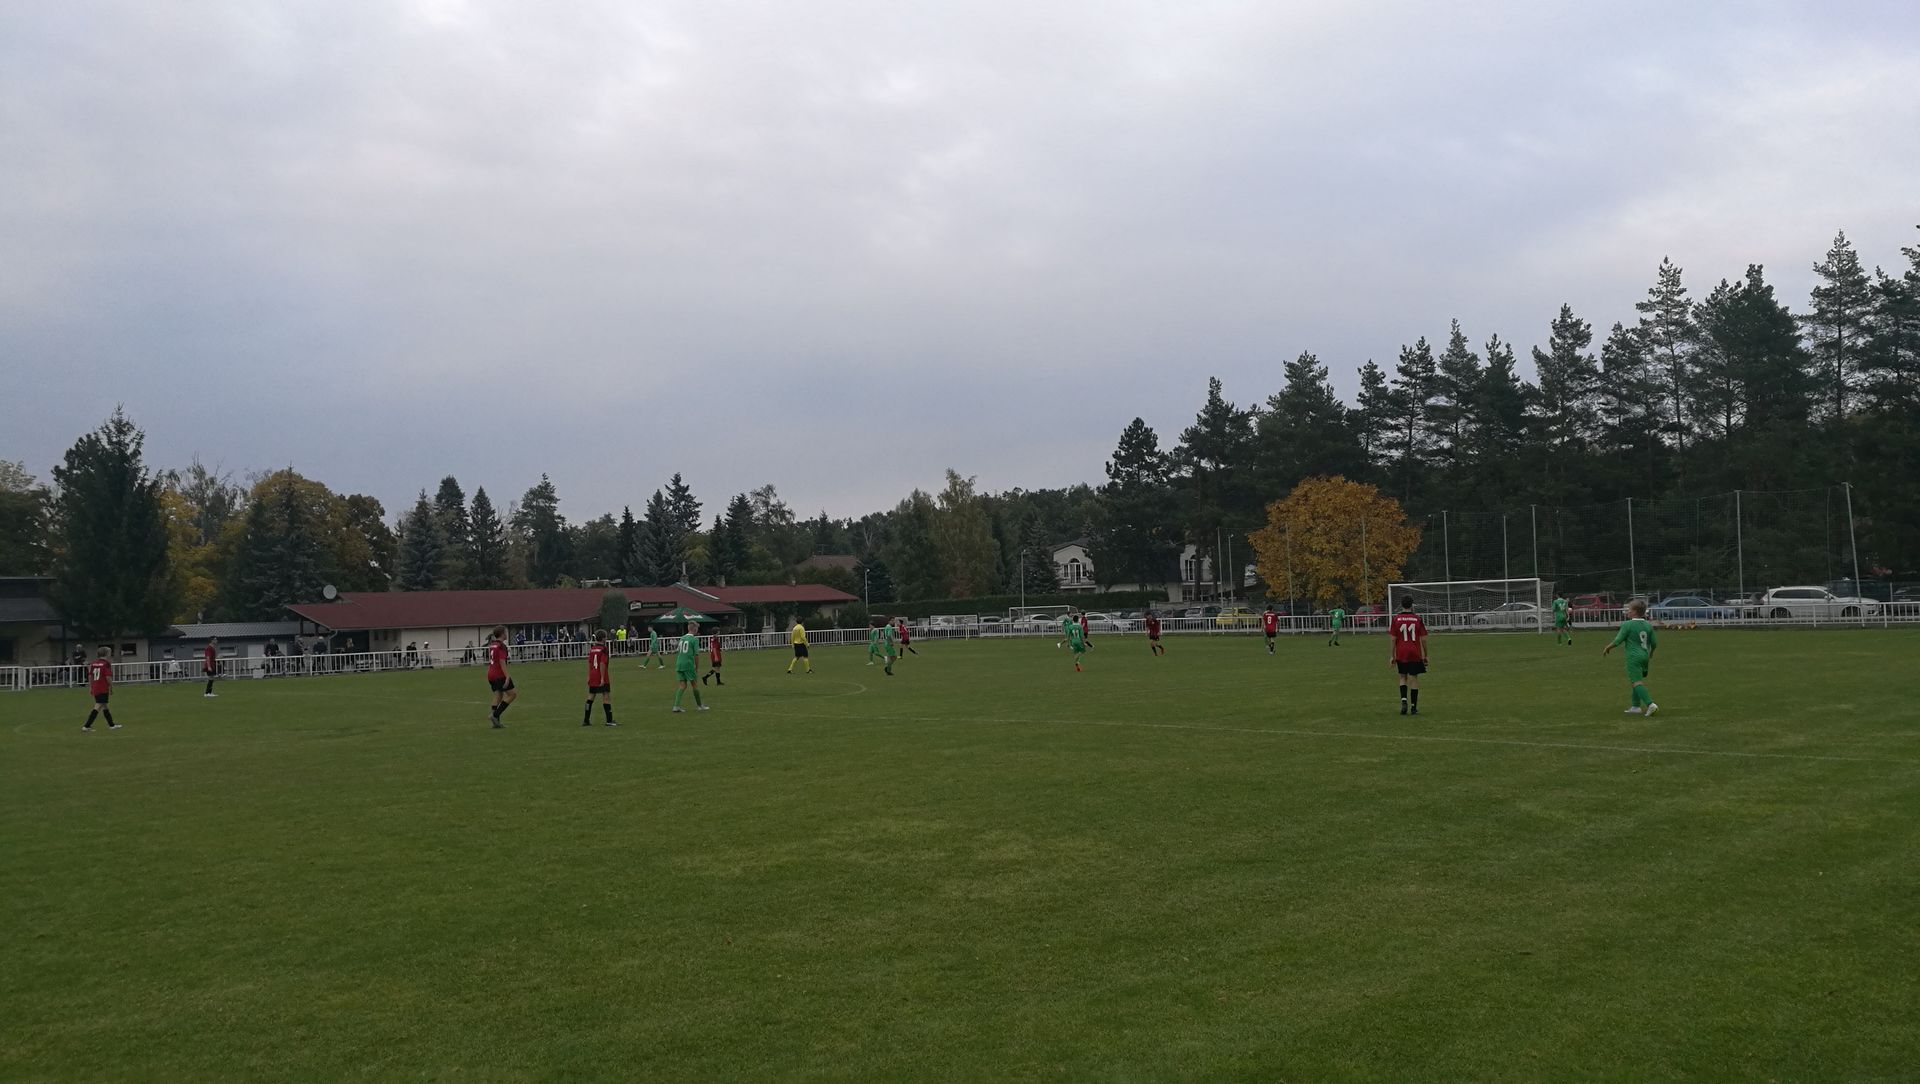 Klánovice - SC Xaverov ml. dorost 5:0 Podzim 2018